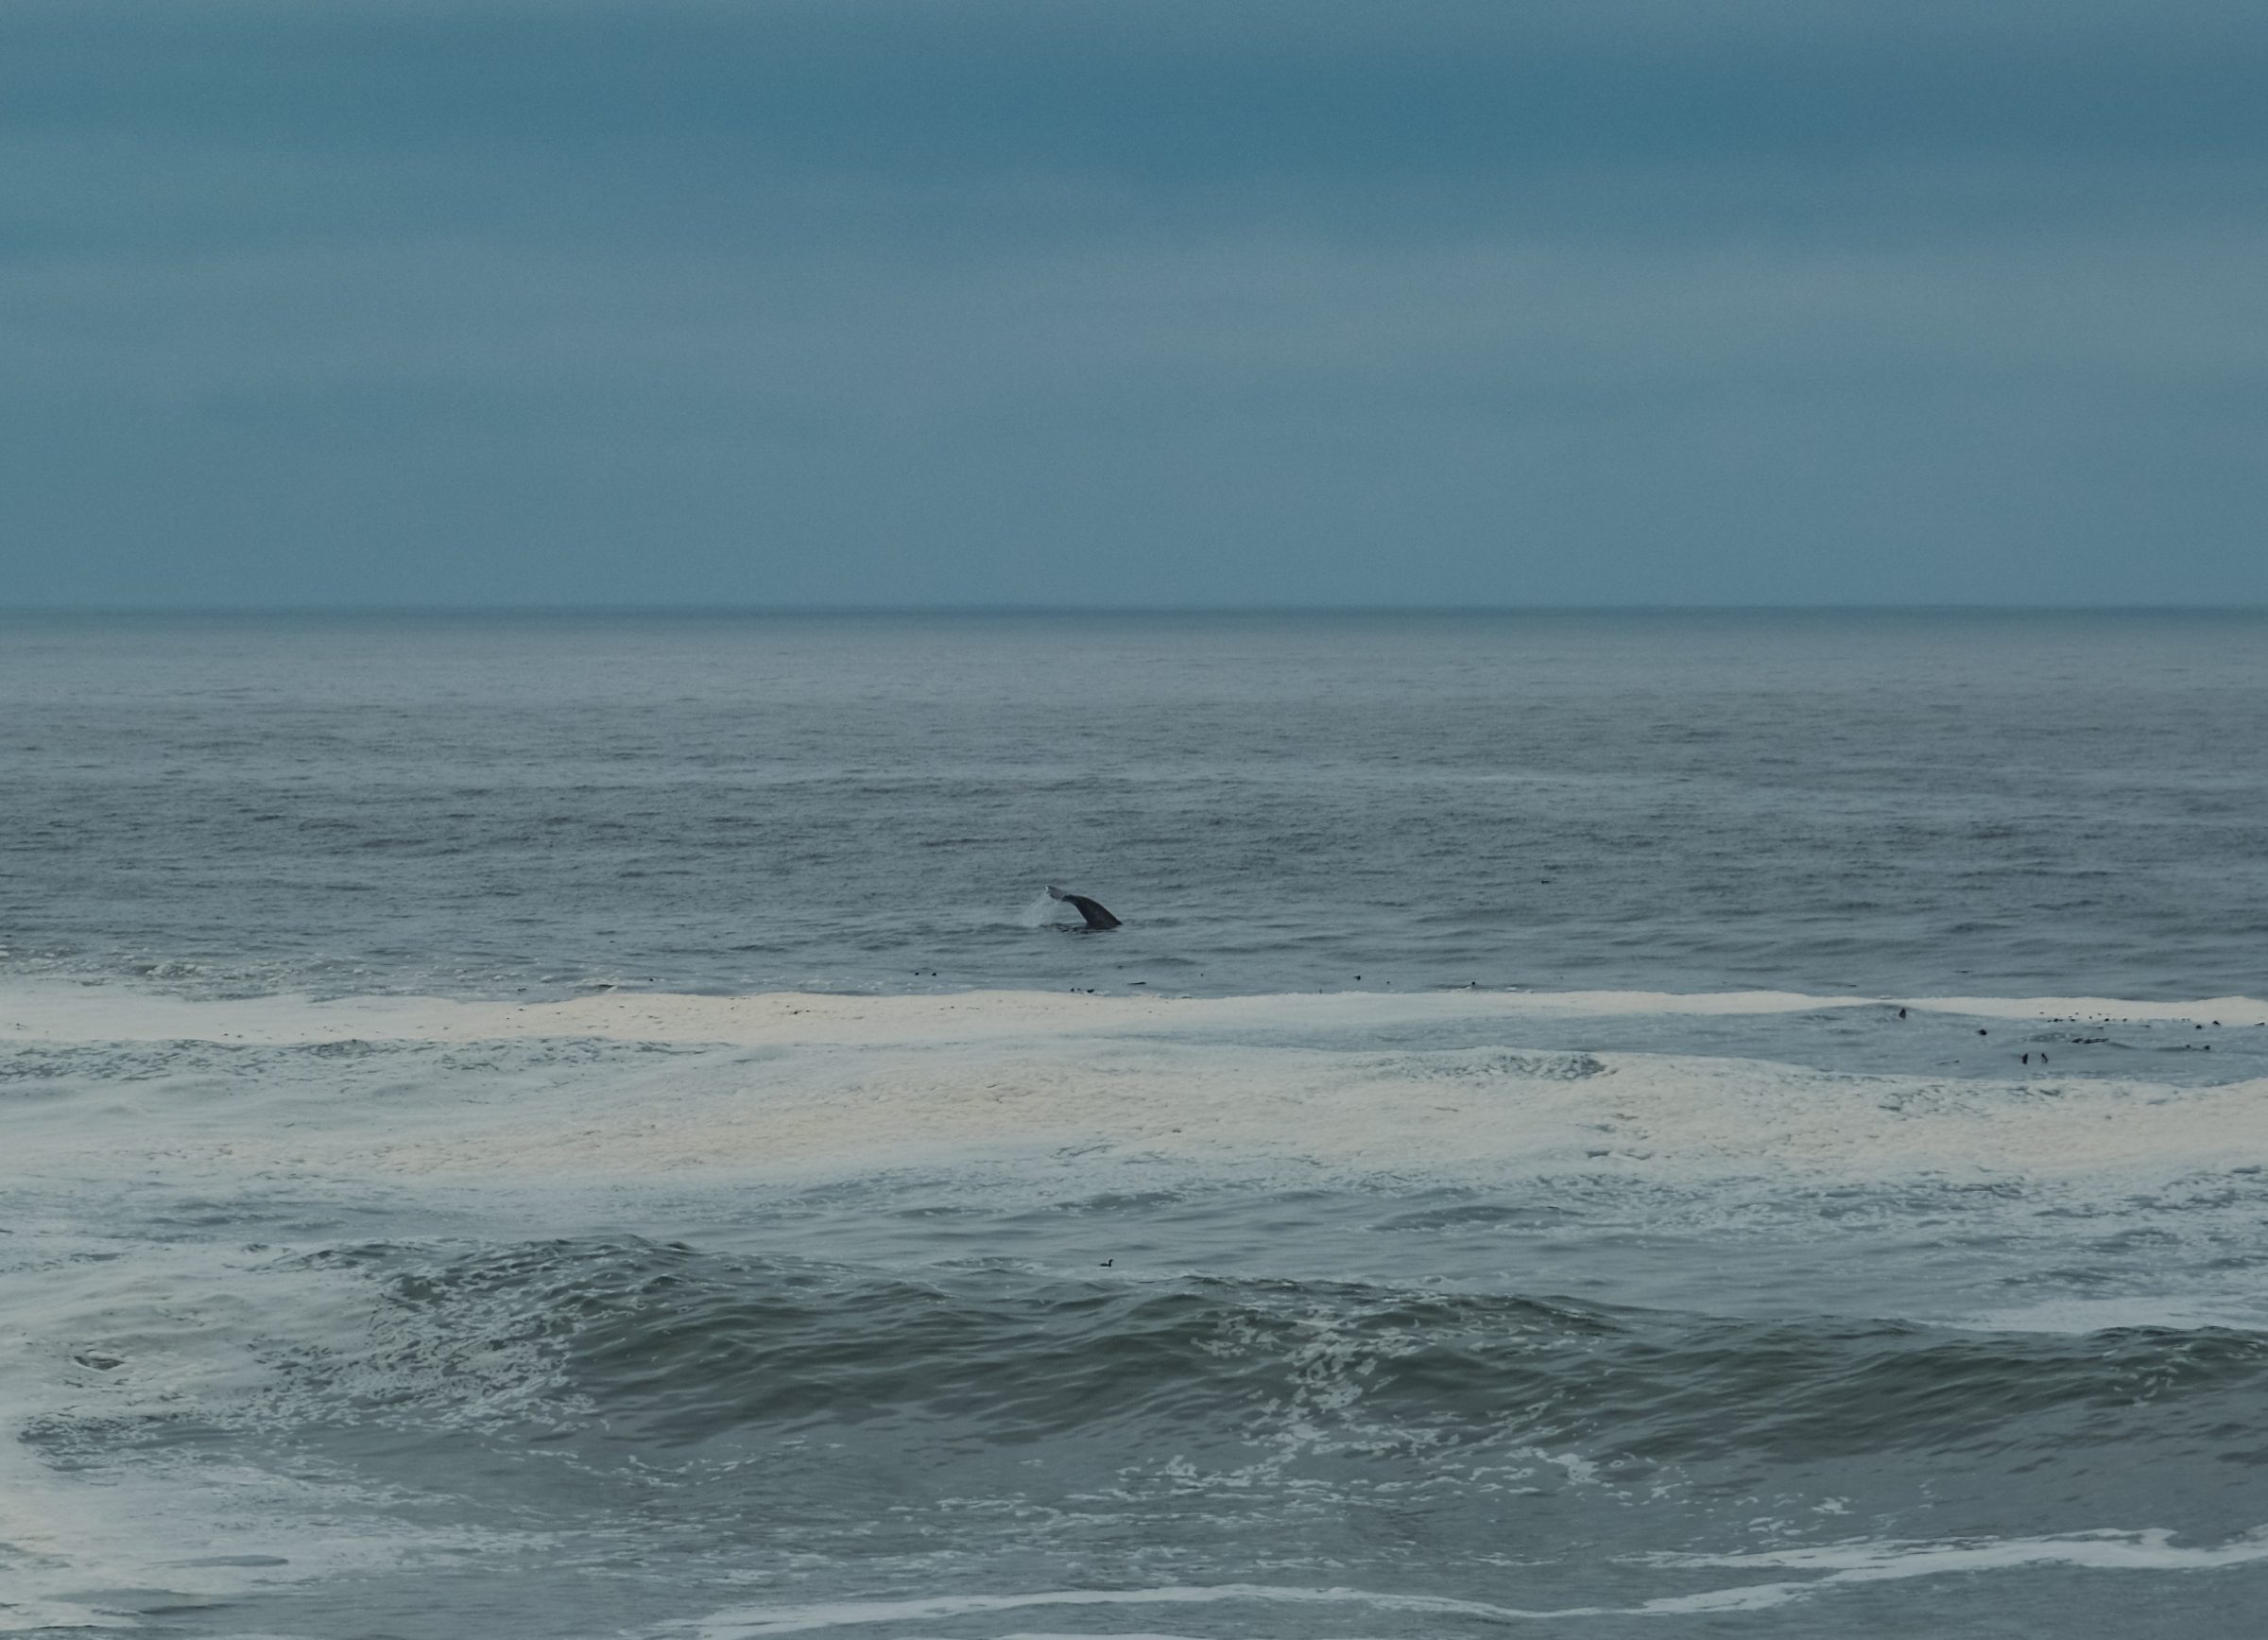 Ocas velryby ve státě Washington na americkém západním pobřeží